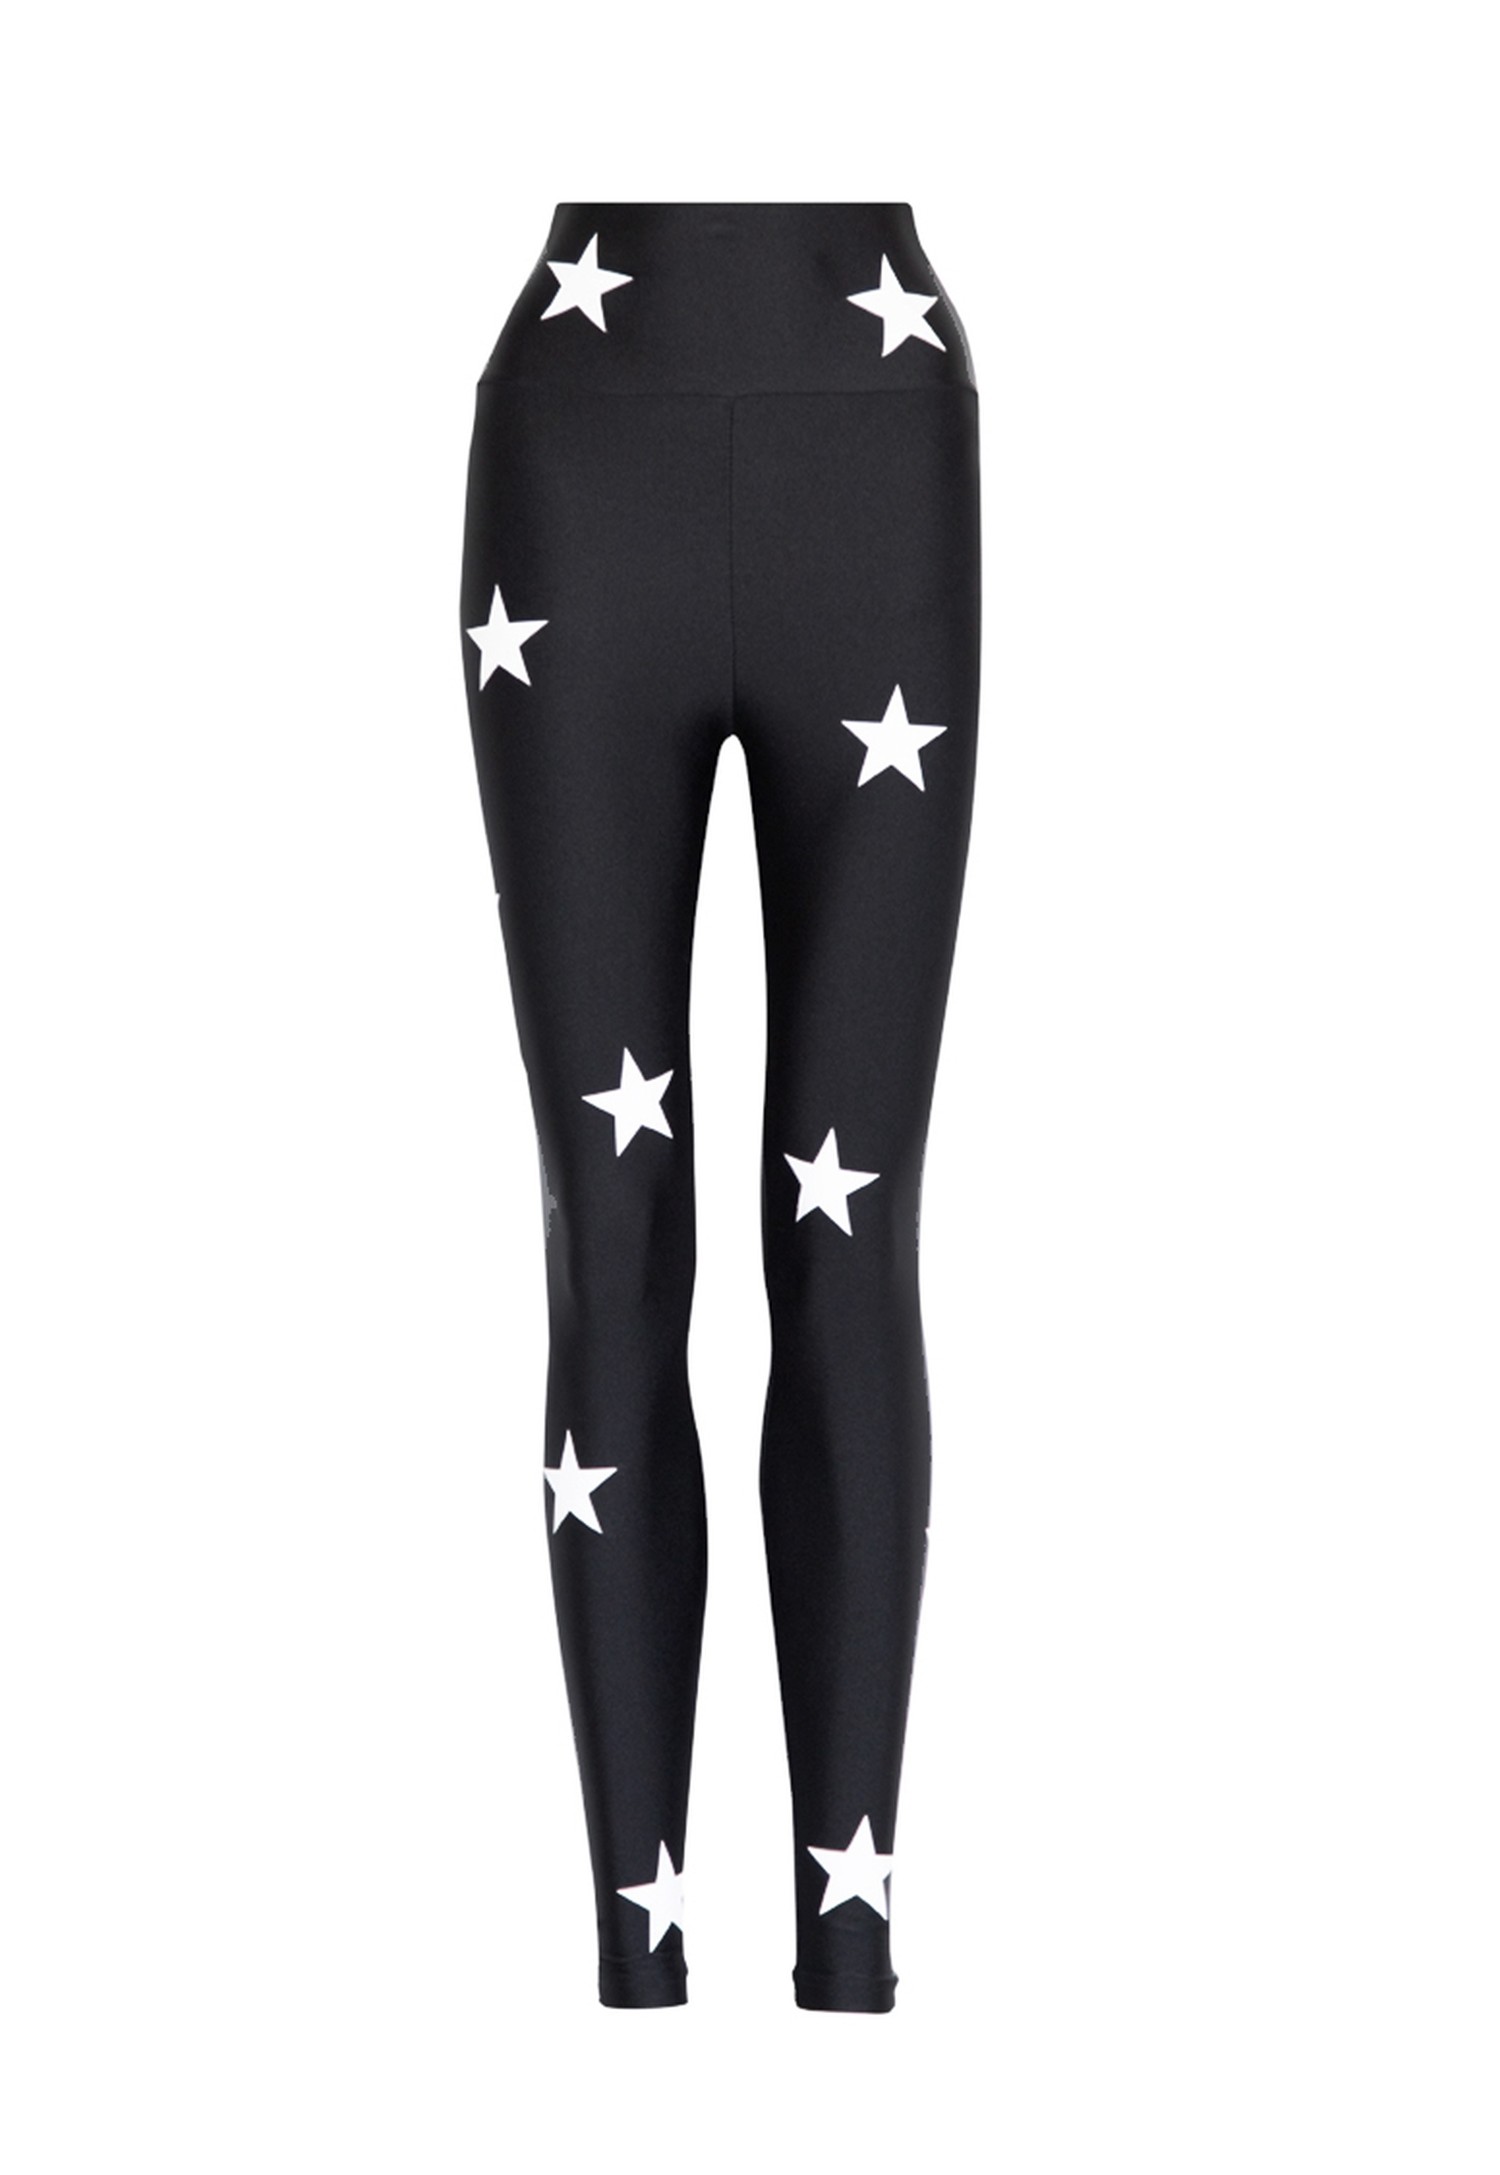 NEW - Legging Lycra Cós Estampada Stars Black White By Gabi Rossi